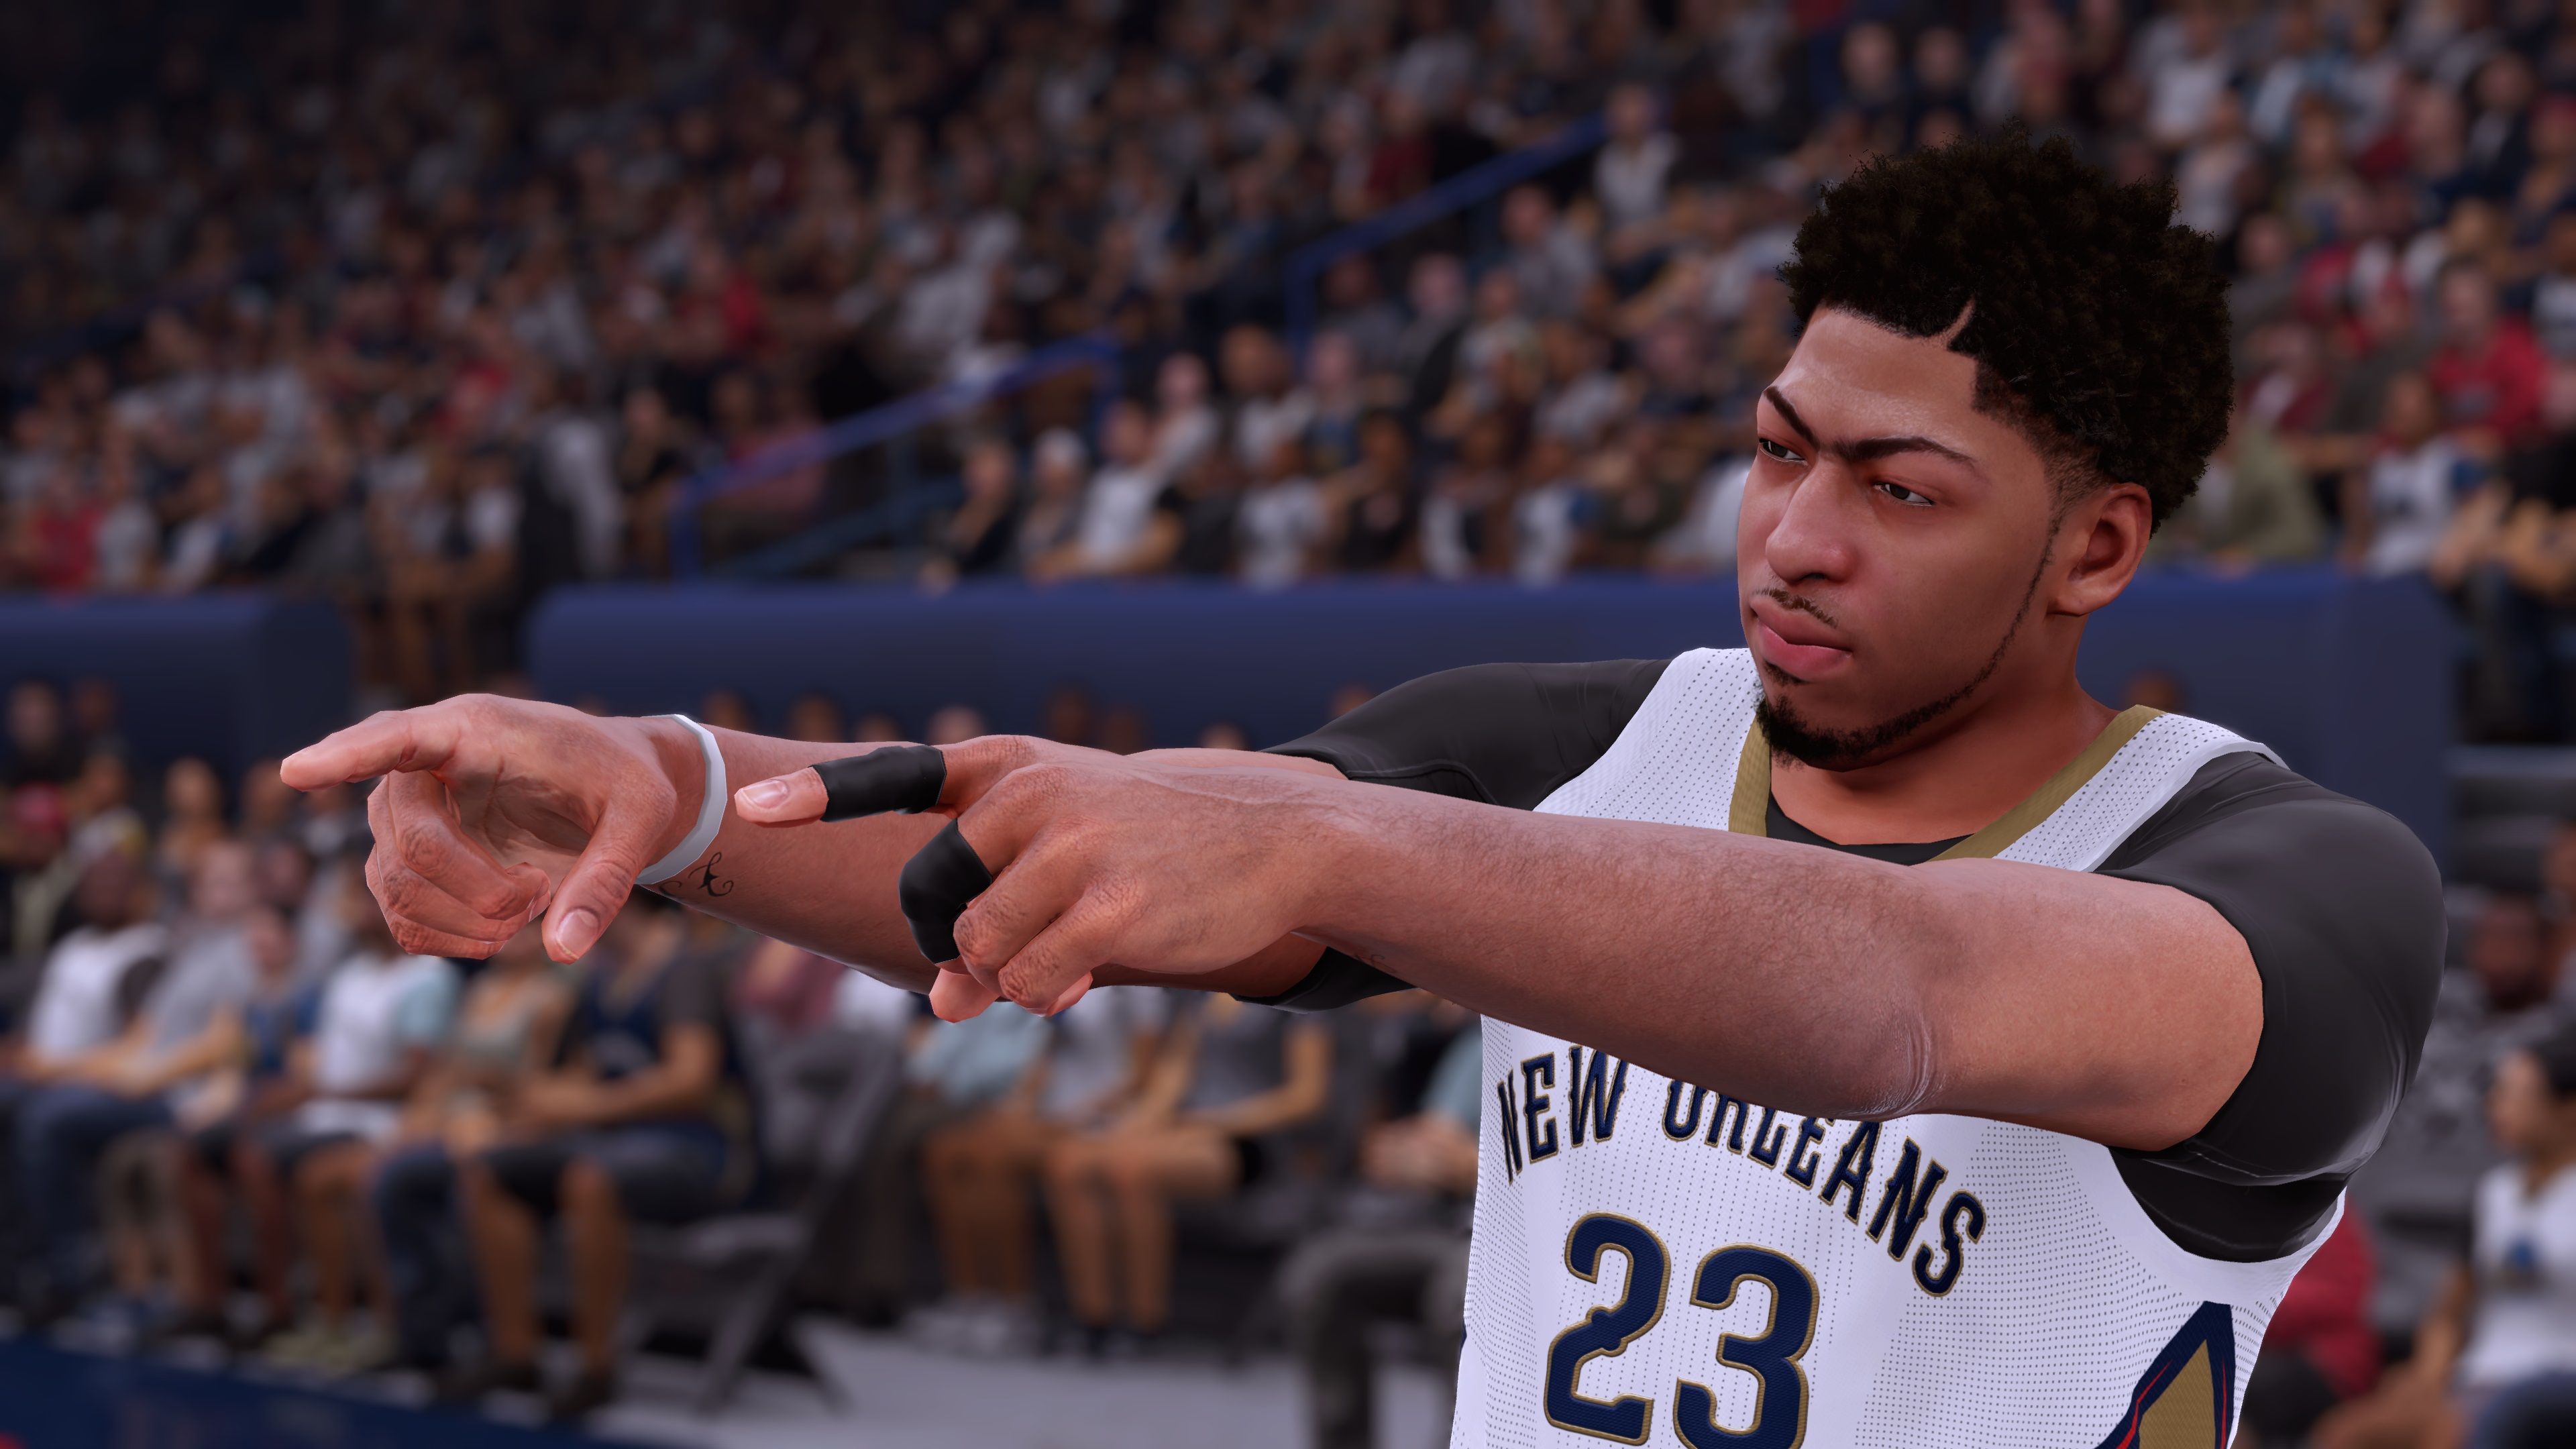 Análisis de NBA 2K16 para PS4, Xbox One y PC